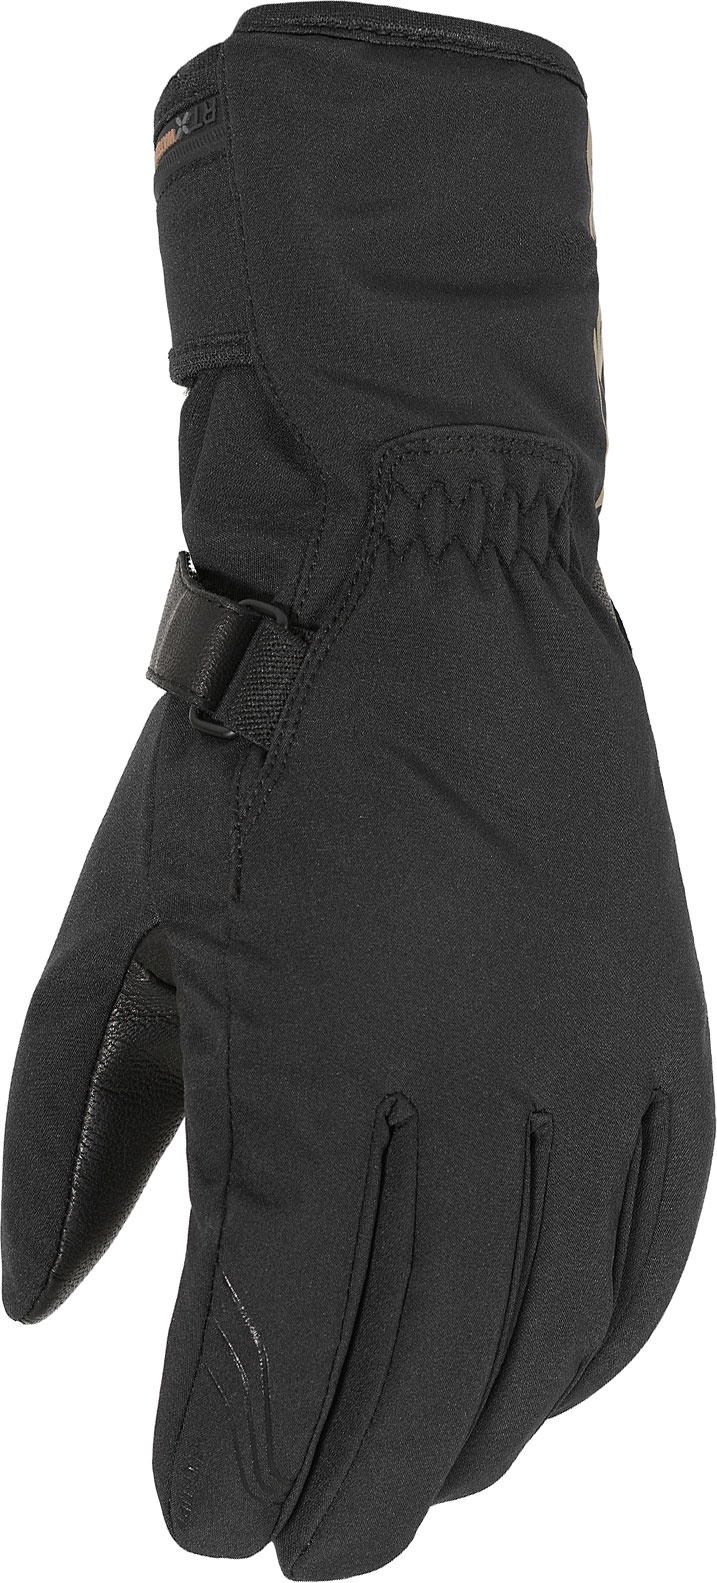 Macna Tigo RTX Evo, gants imperméables pour femmes - Noir - XXL